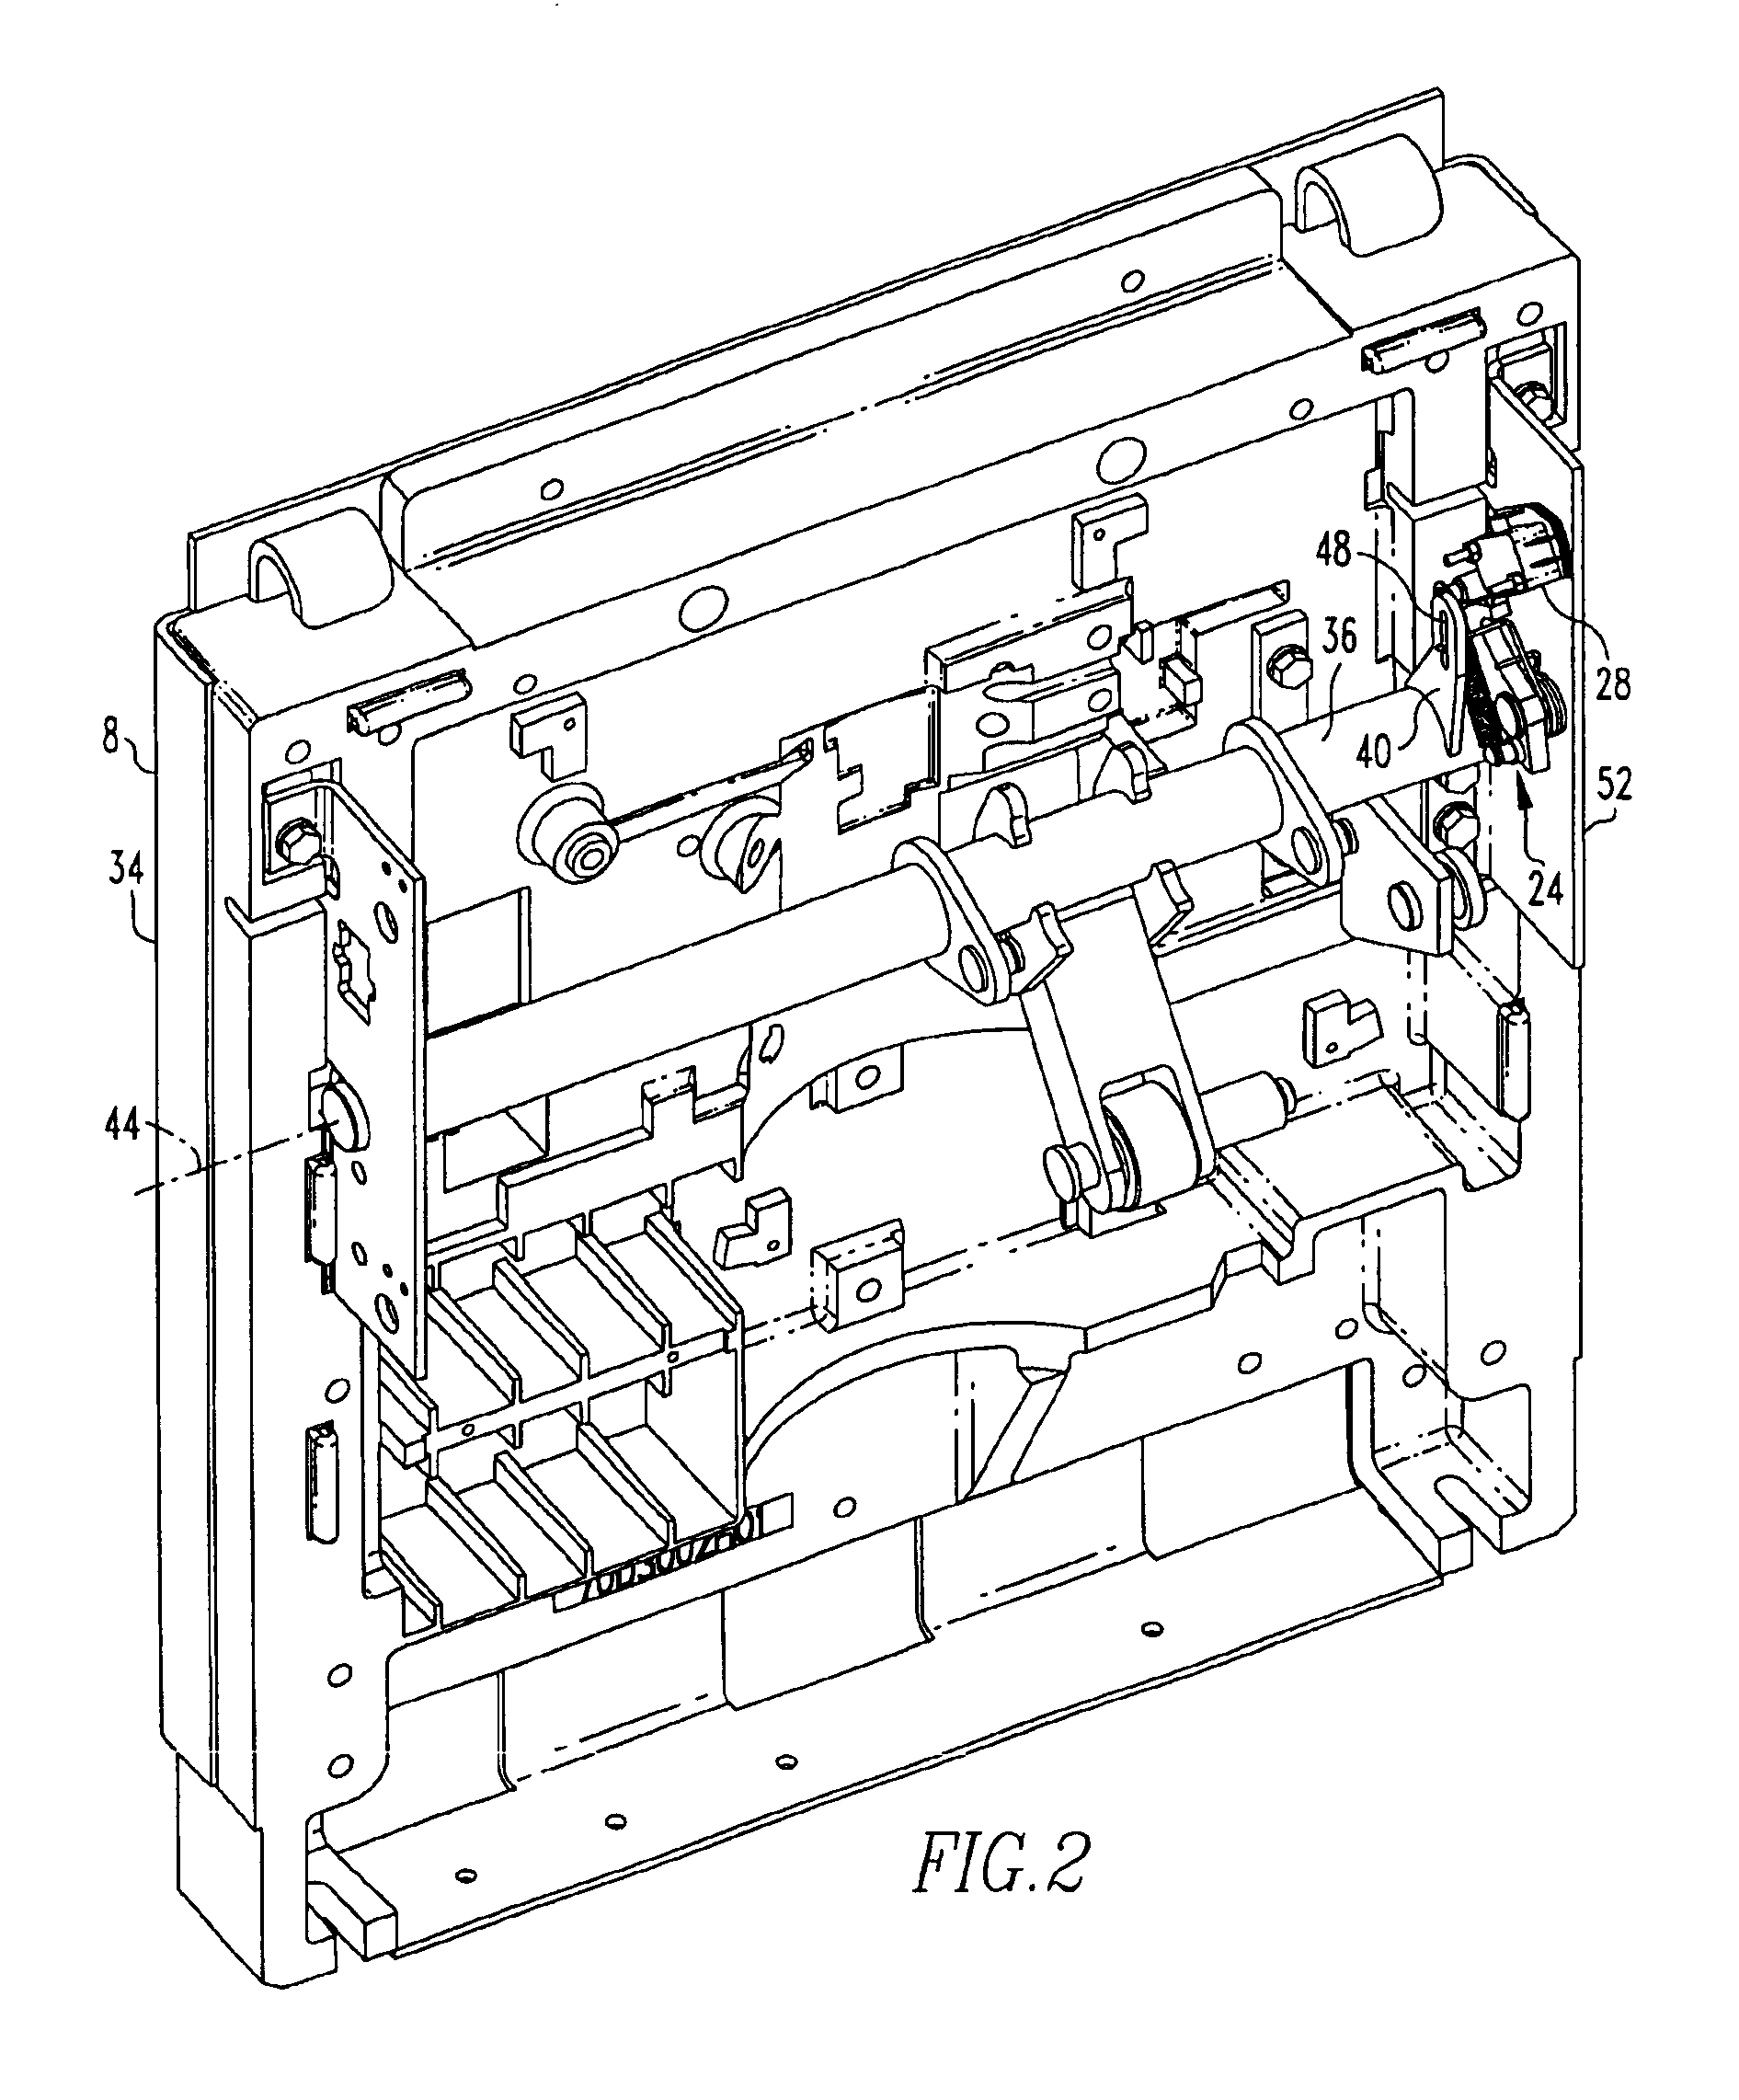 Circuit breaker with delay mechanism